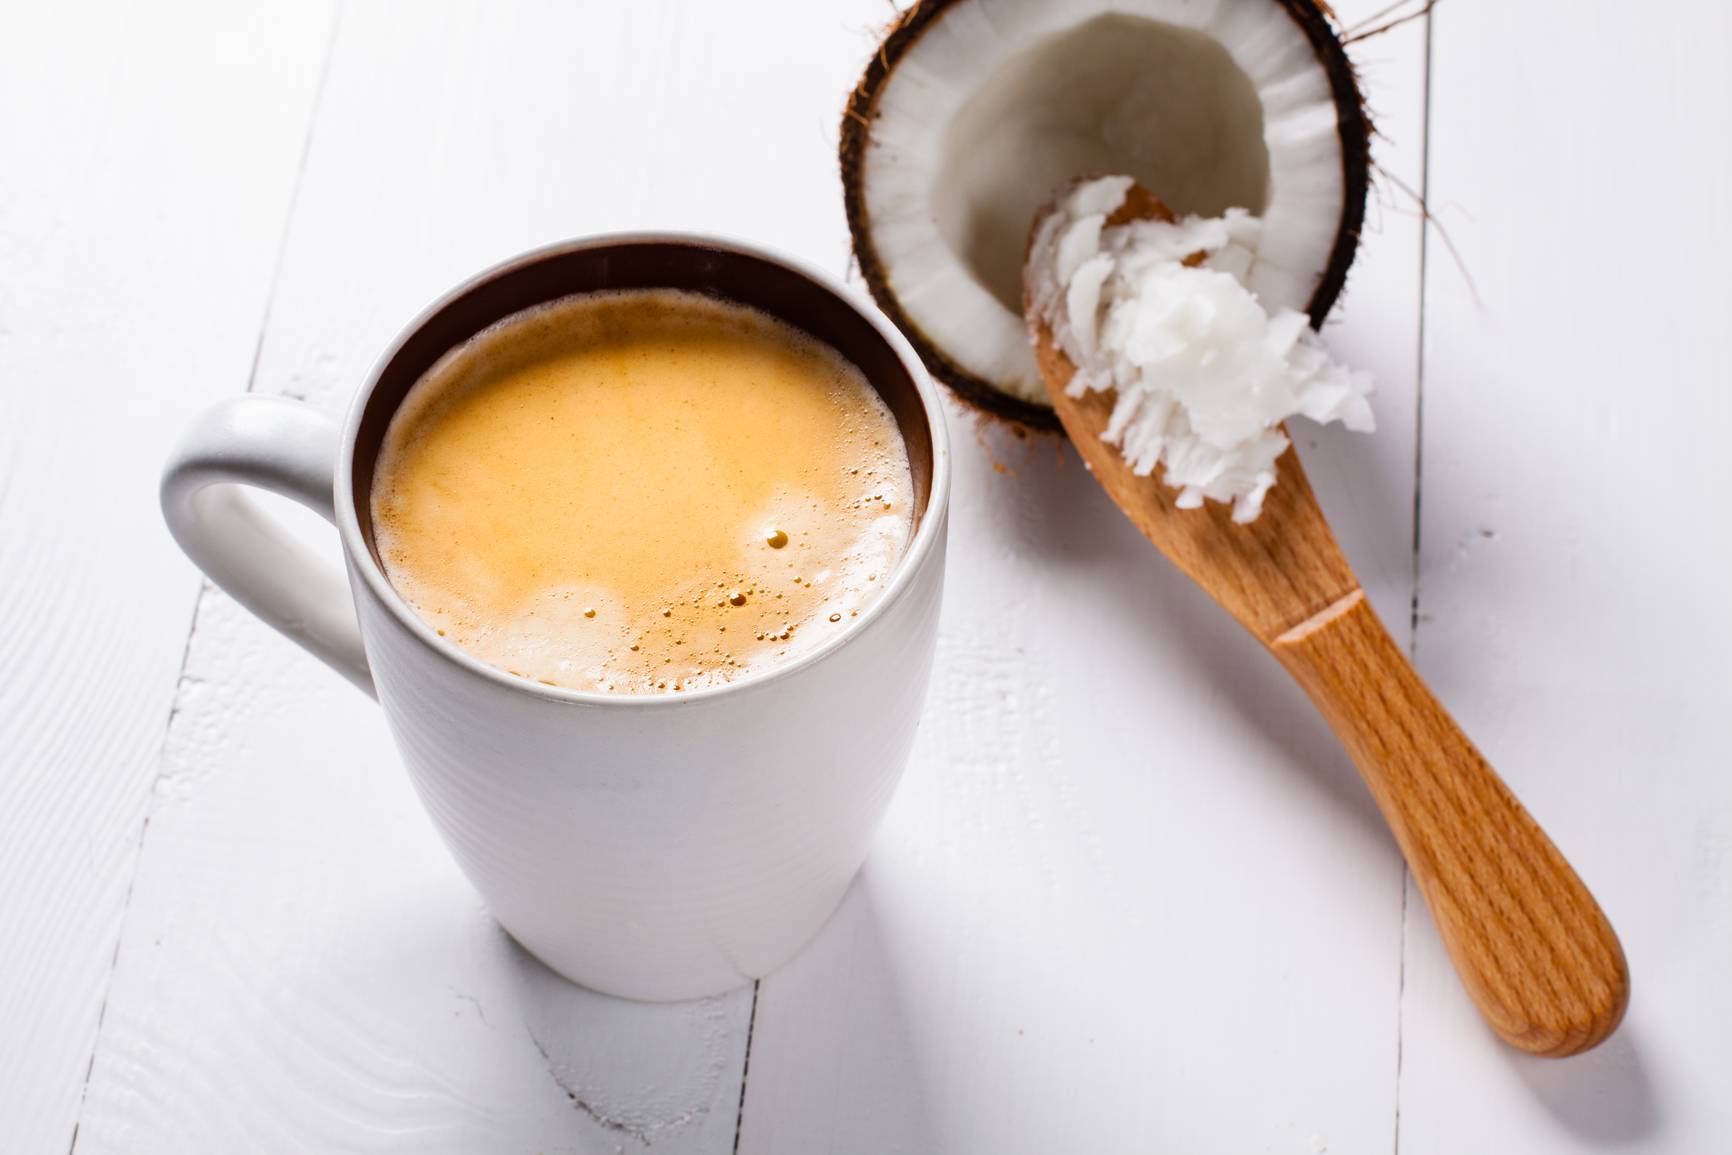 Рецепты кофе с кокосовым молоком